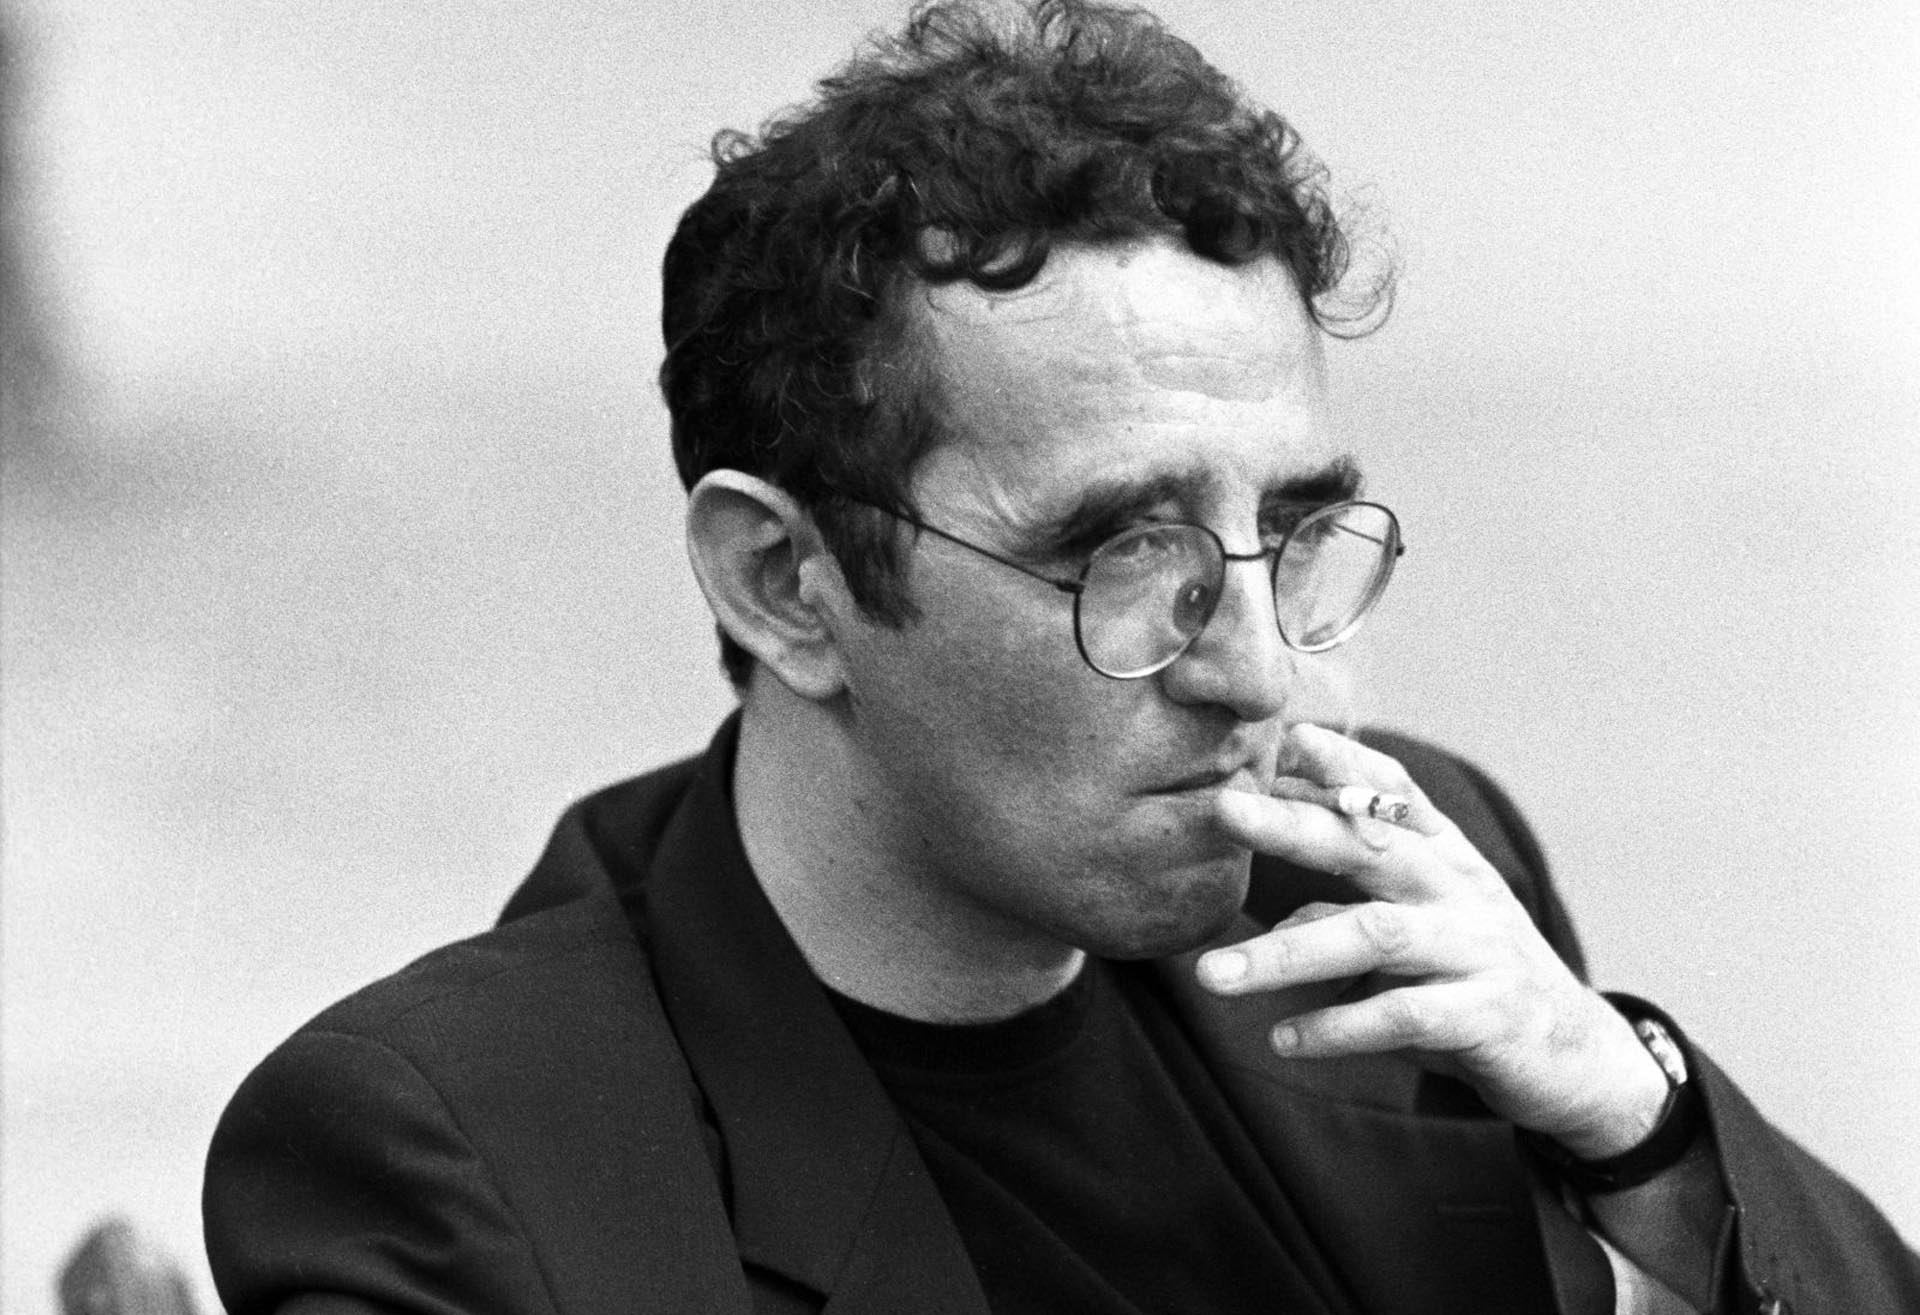 Roberto Bolaño died in Barcelona in 2003.